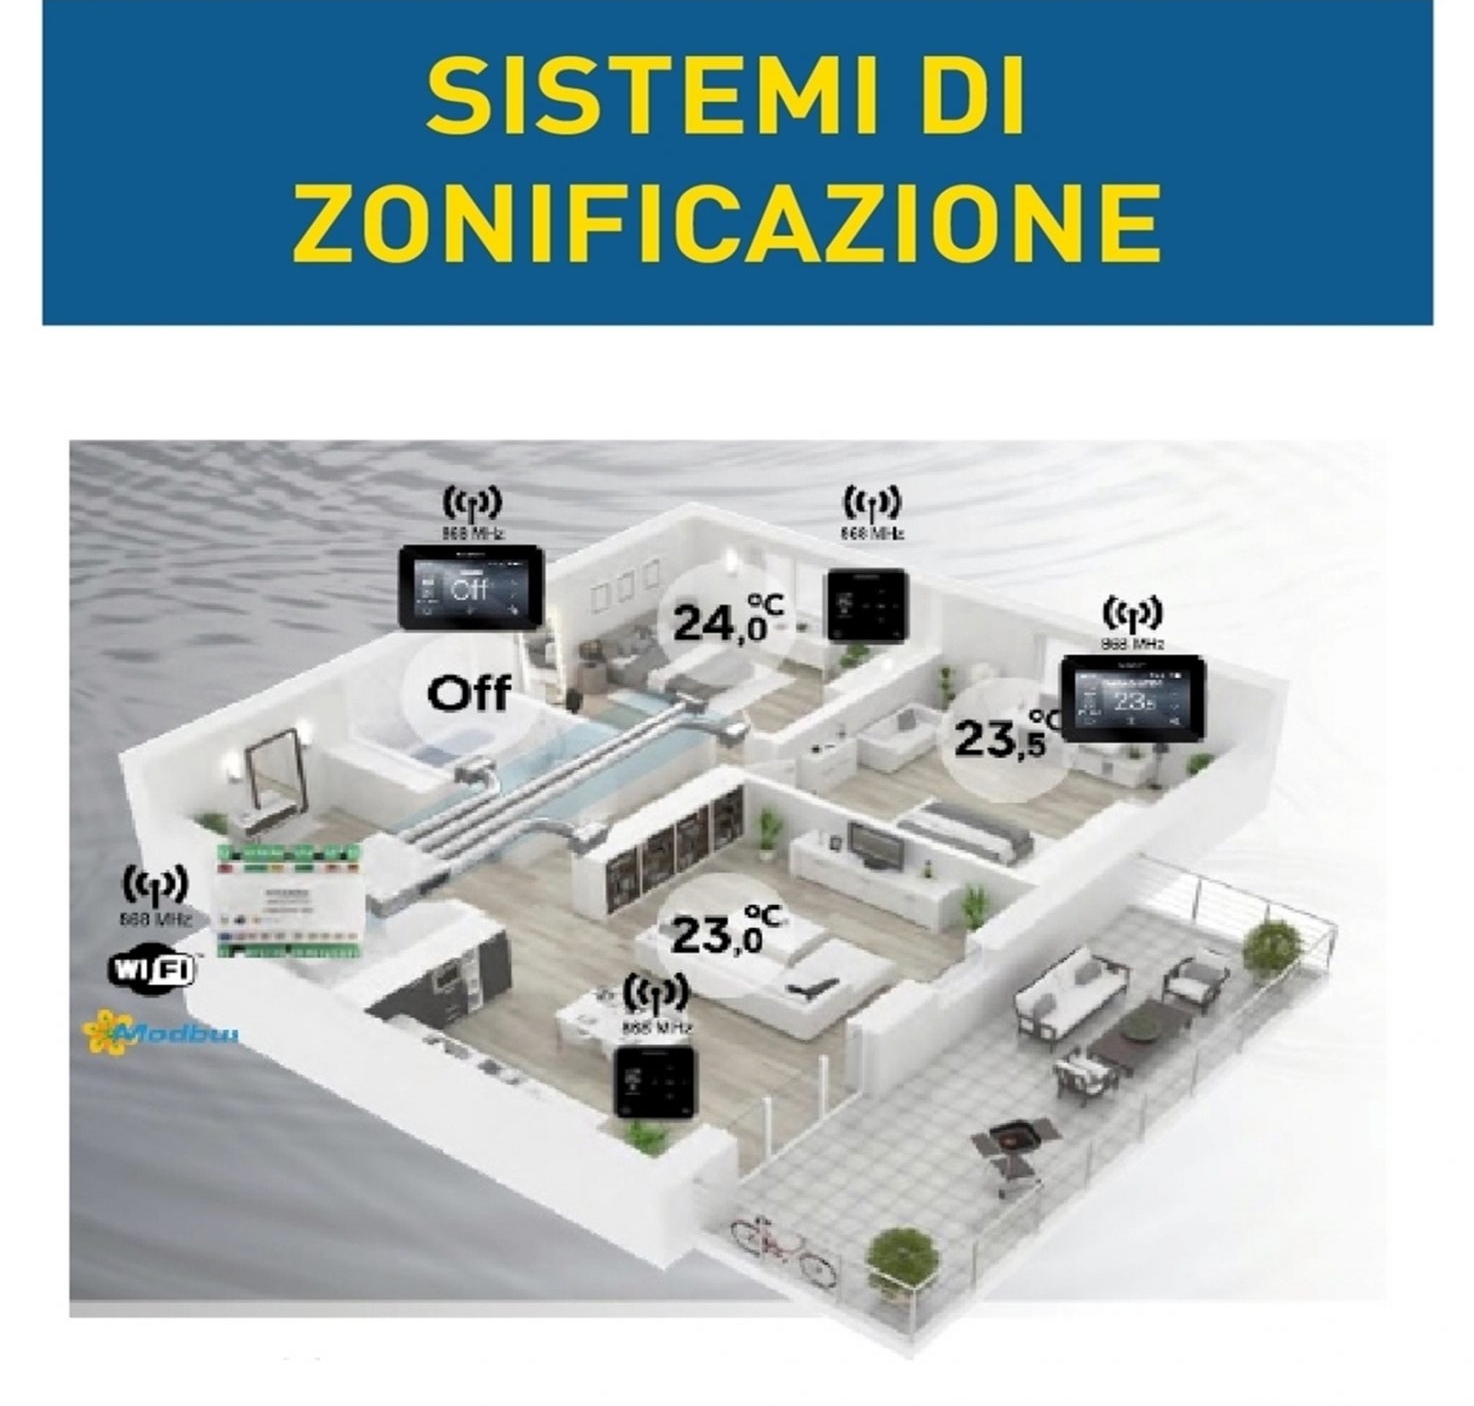 <p style="text-align: center;">Impianti Canalizzati Mitsubishi Milano